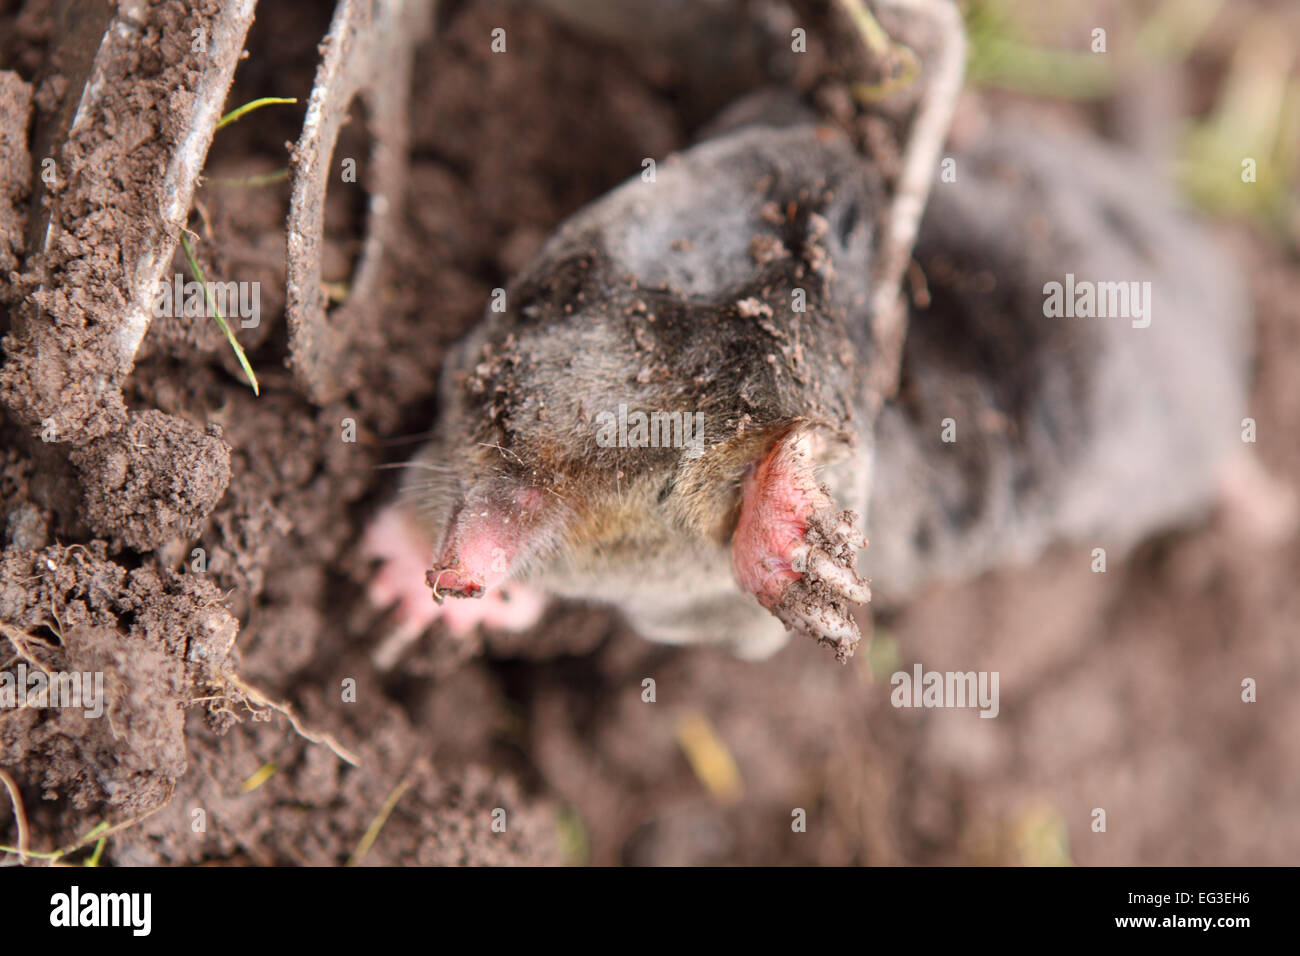 Dead Mole mole pris dans un piège qui avait été placé dans son tunnel souterrain dans un jardin dans le Herefordshire UK Banque D'Images